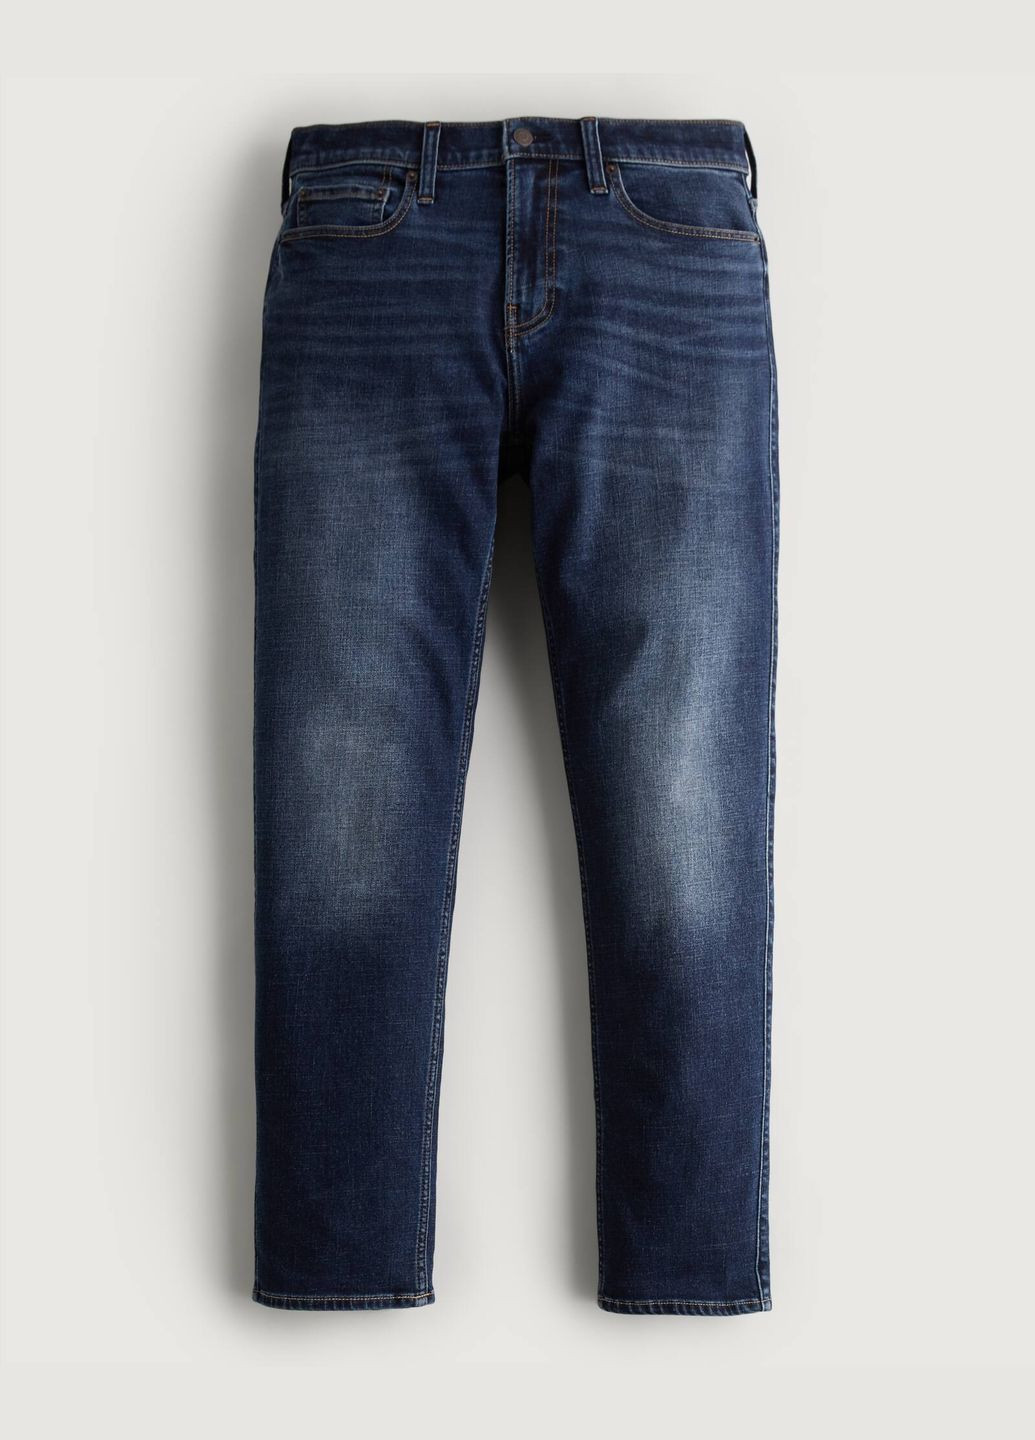 Темно-синие демисезонные джинсы athletic slim hc9635m Hollister